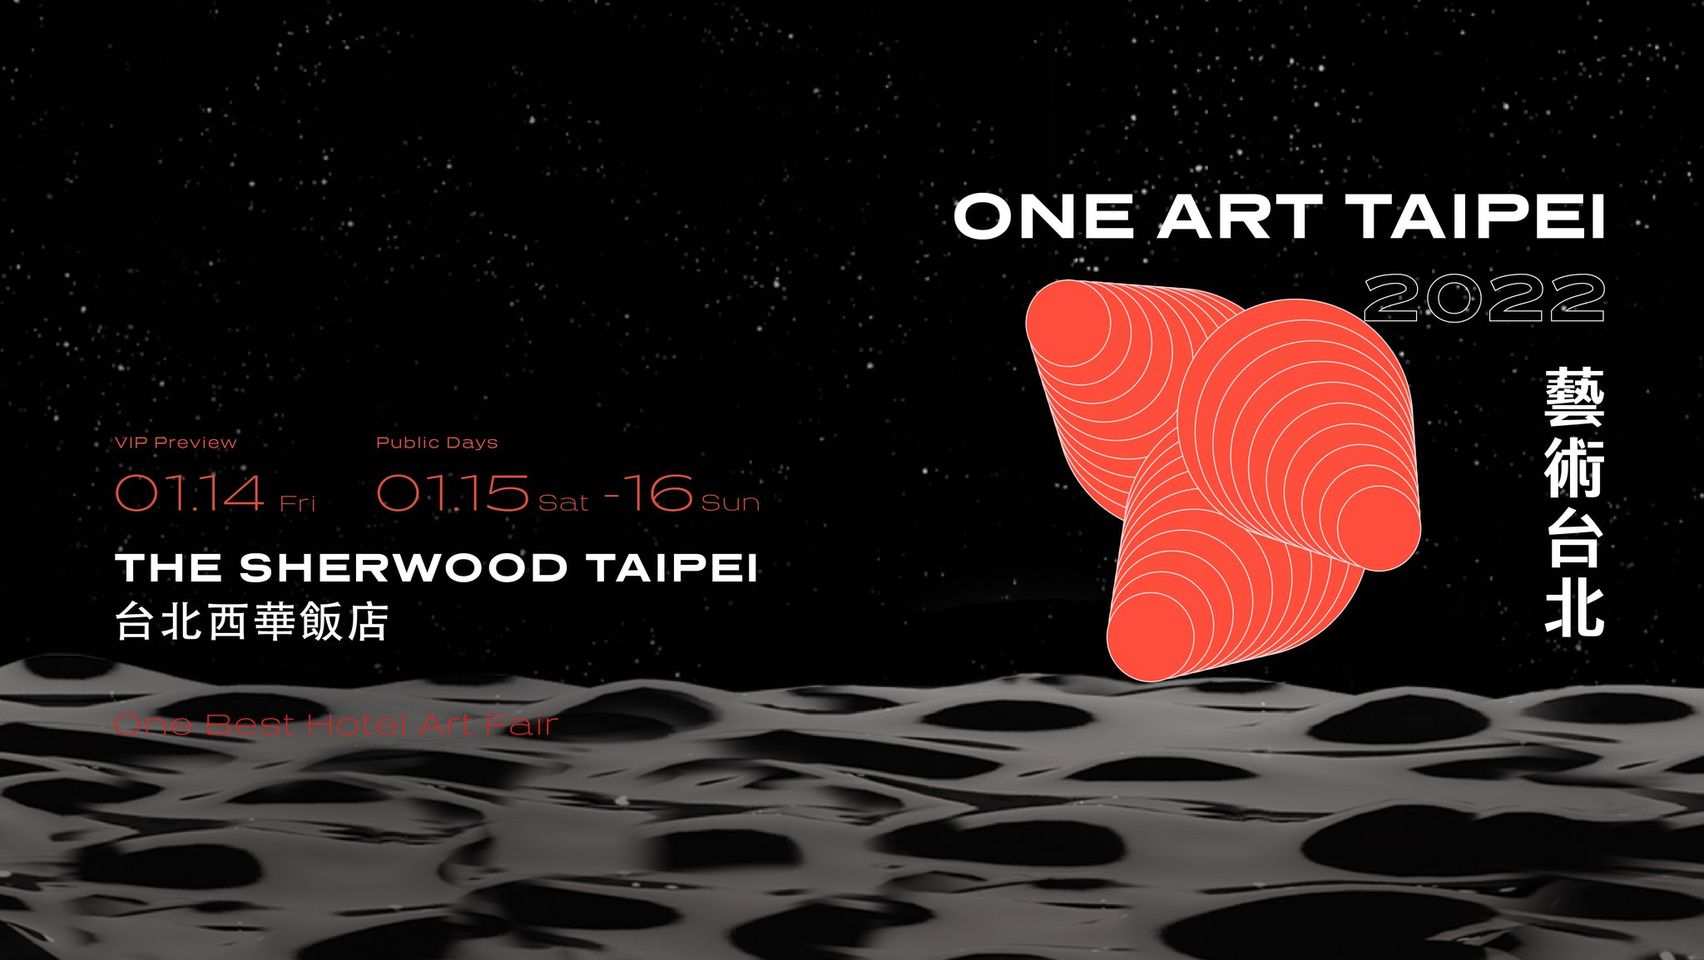 尋藝慢饗 : 酒店即藝廊 | ONE ART Taipei 2022 藝術台北